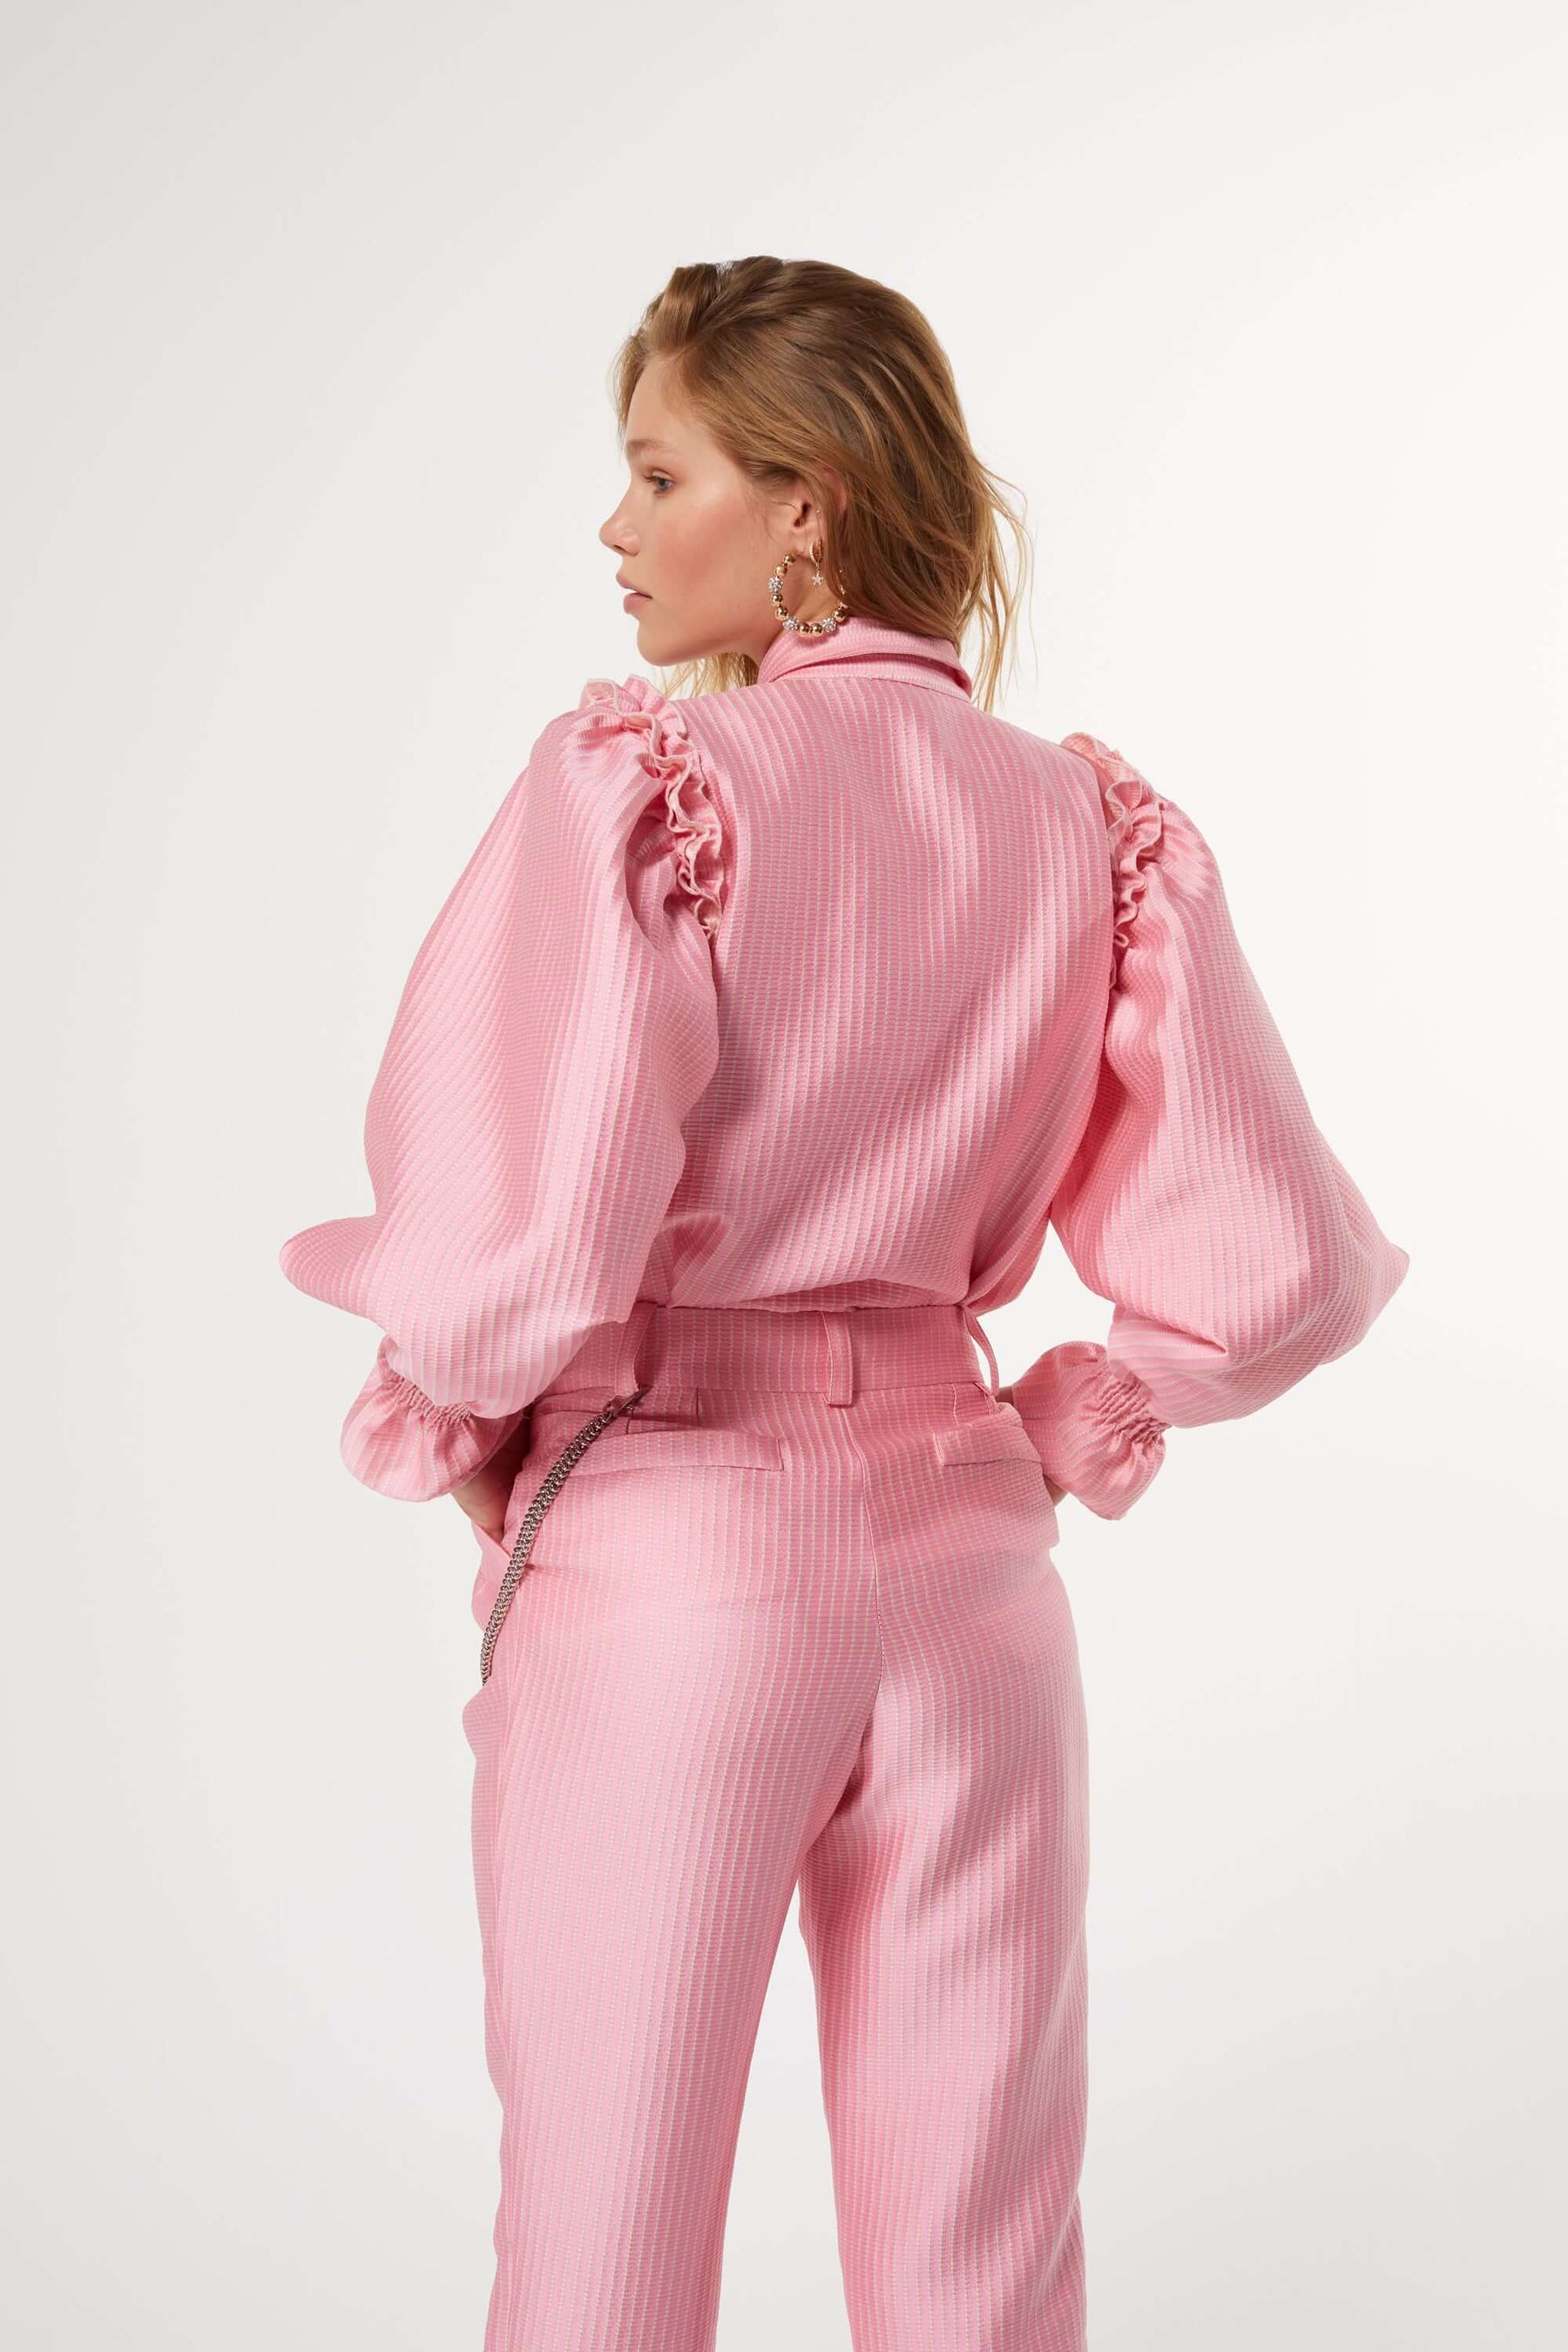 Gabrielle Paris : Pantalon de pyjama Bohème Rose Poudrée - 100